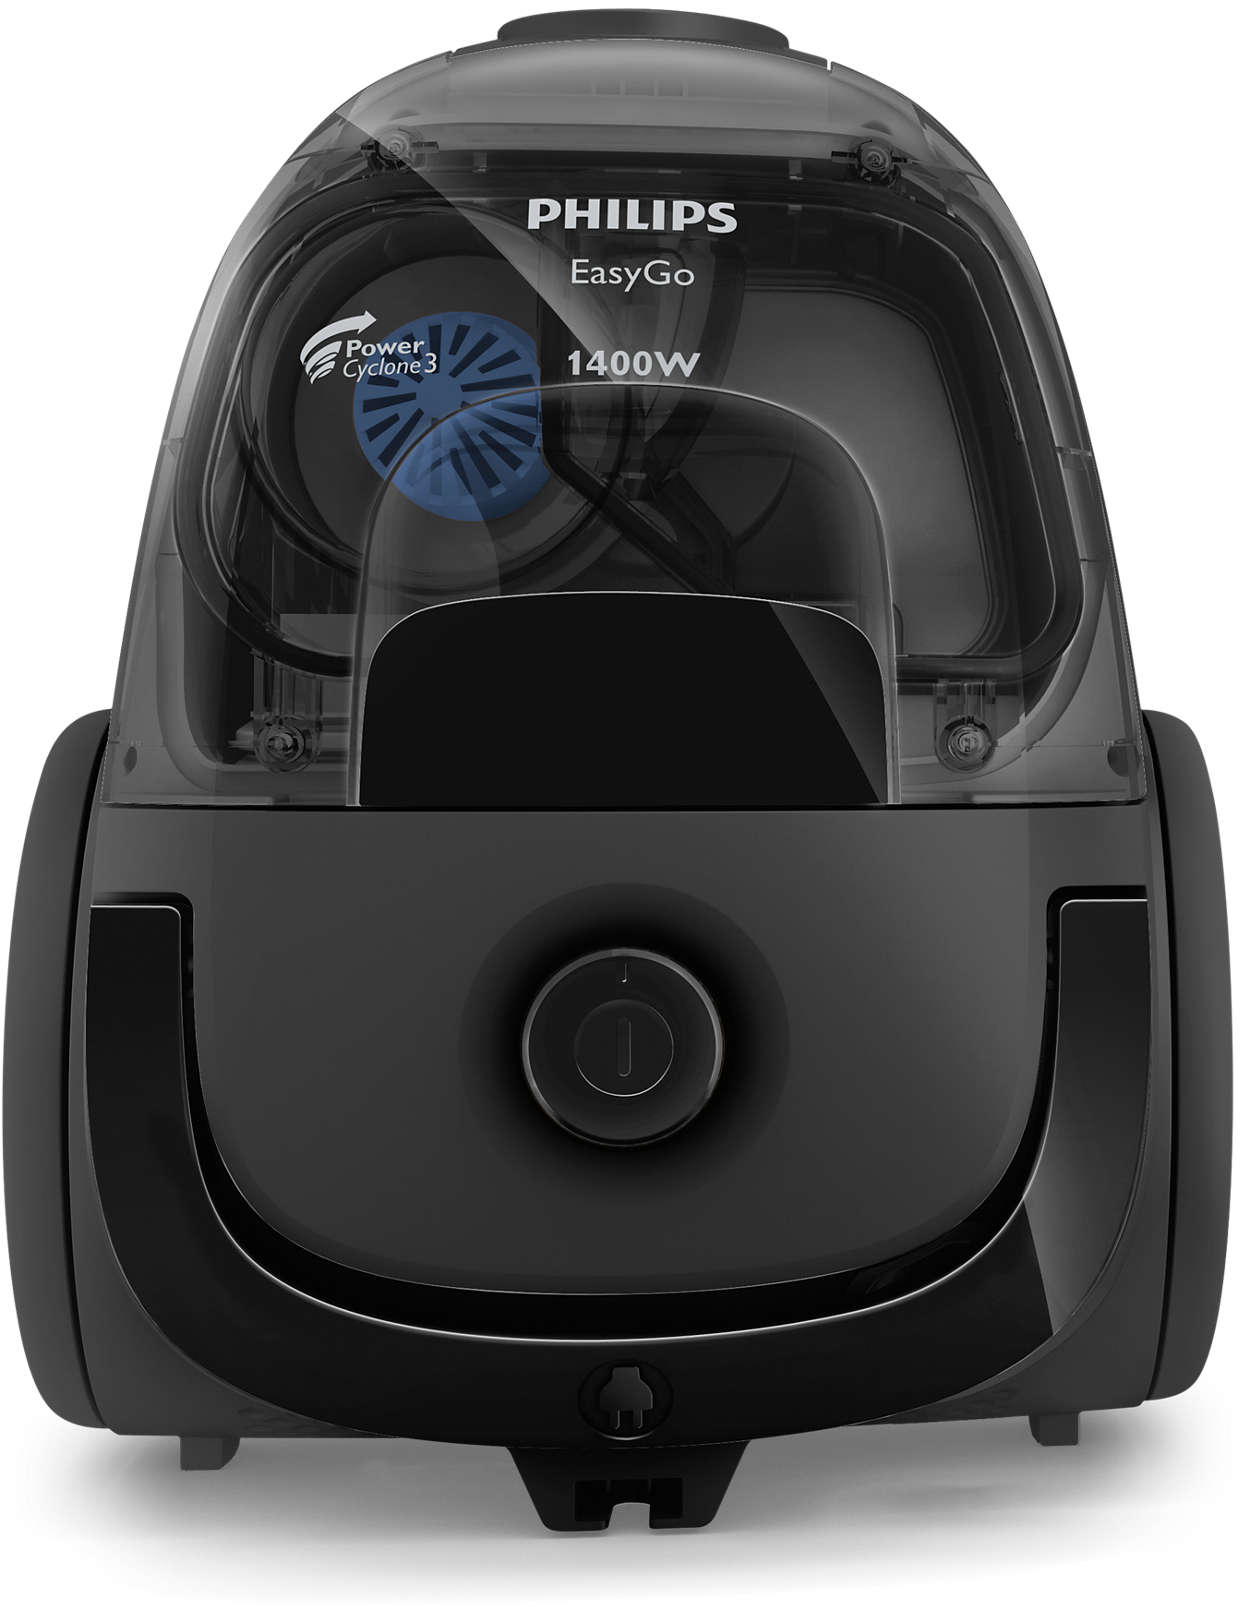 Филипс циклон. Пылесос Philips fc8087/01, 1400вт, черный. Пылесос Филипс fc8087/01. Philips easy go 1400w пылесос. Пылесос Филипс Power Cyclone.